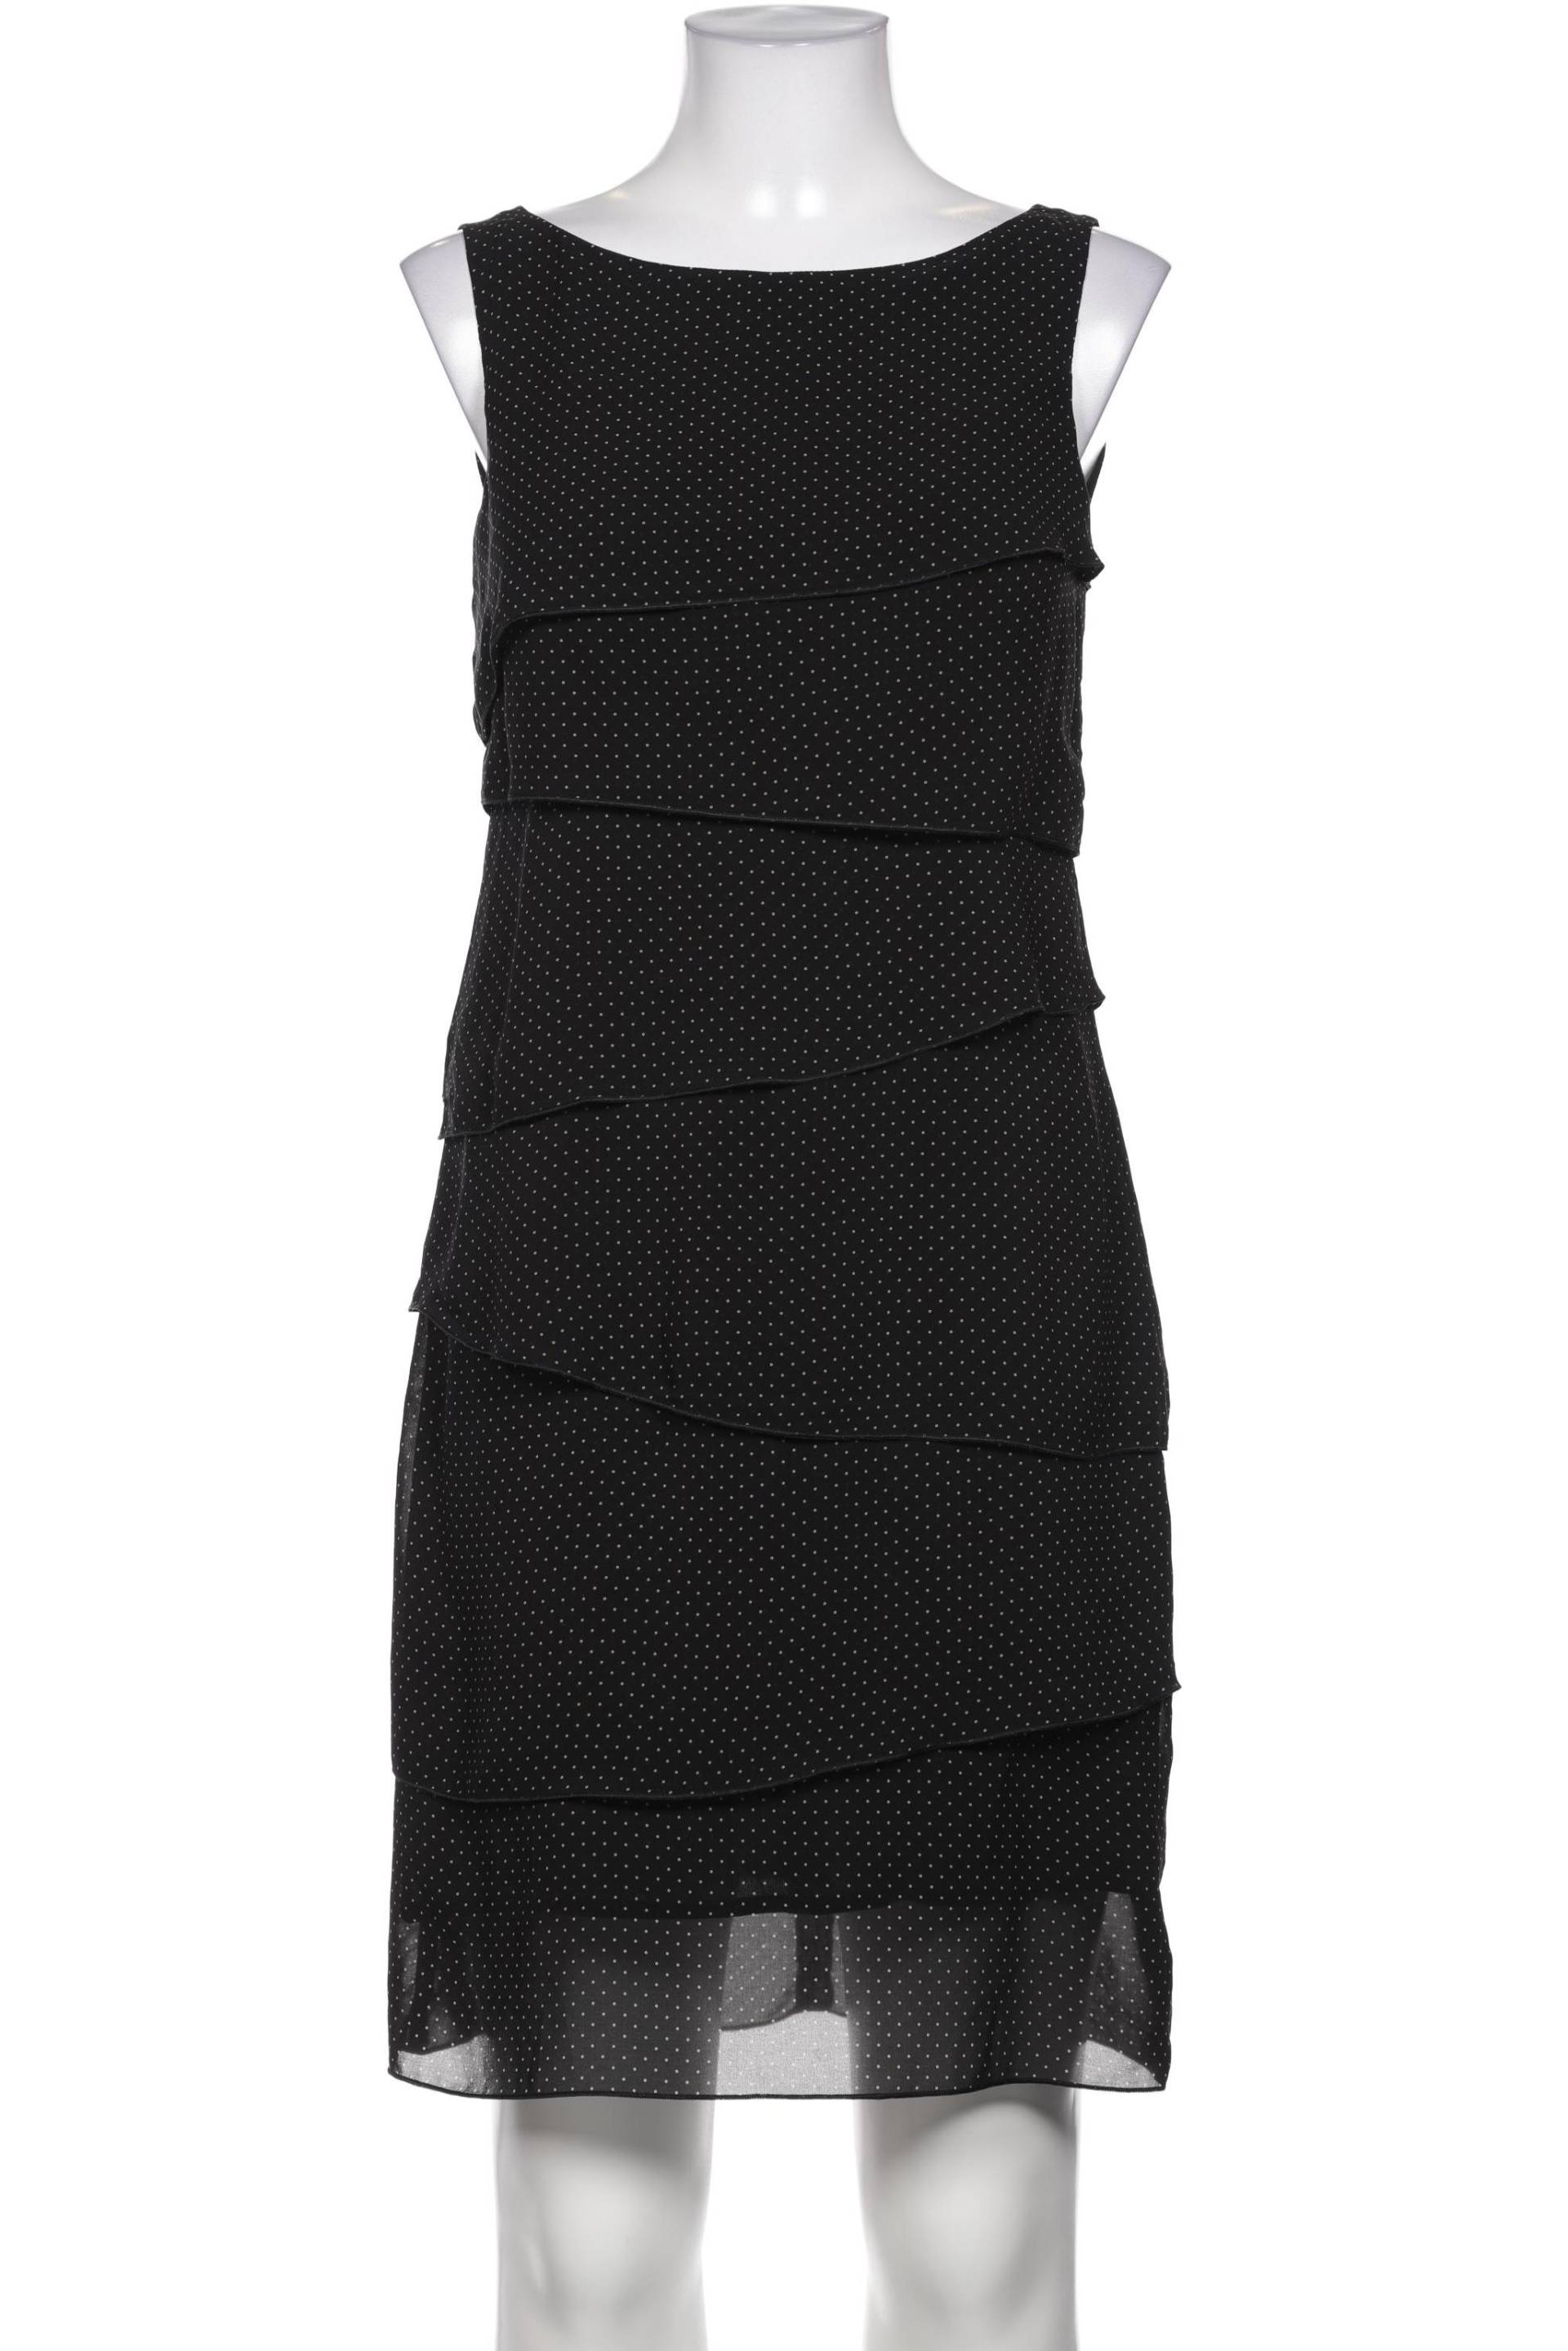 s.Oliver Selection Damen Kleid, schwarz, Gr. 36 von s.Oliver Selection